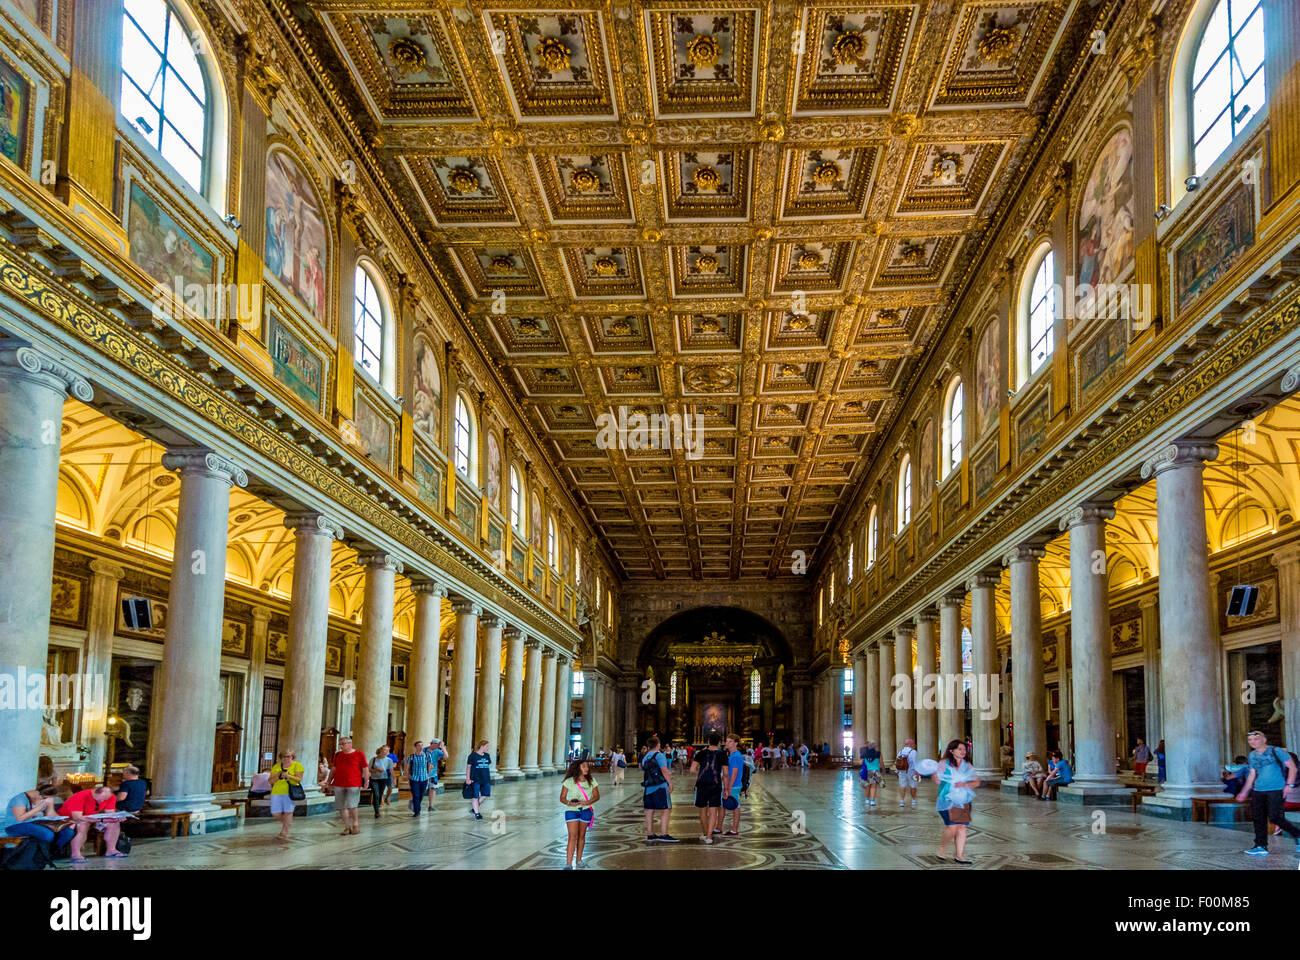 Nave ornamentado suelo y techo de la Basilica di Santa Maria Maggiore. Roma, Italia. Foto de stock